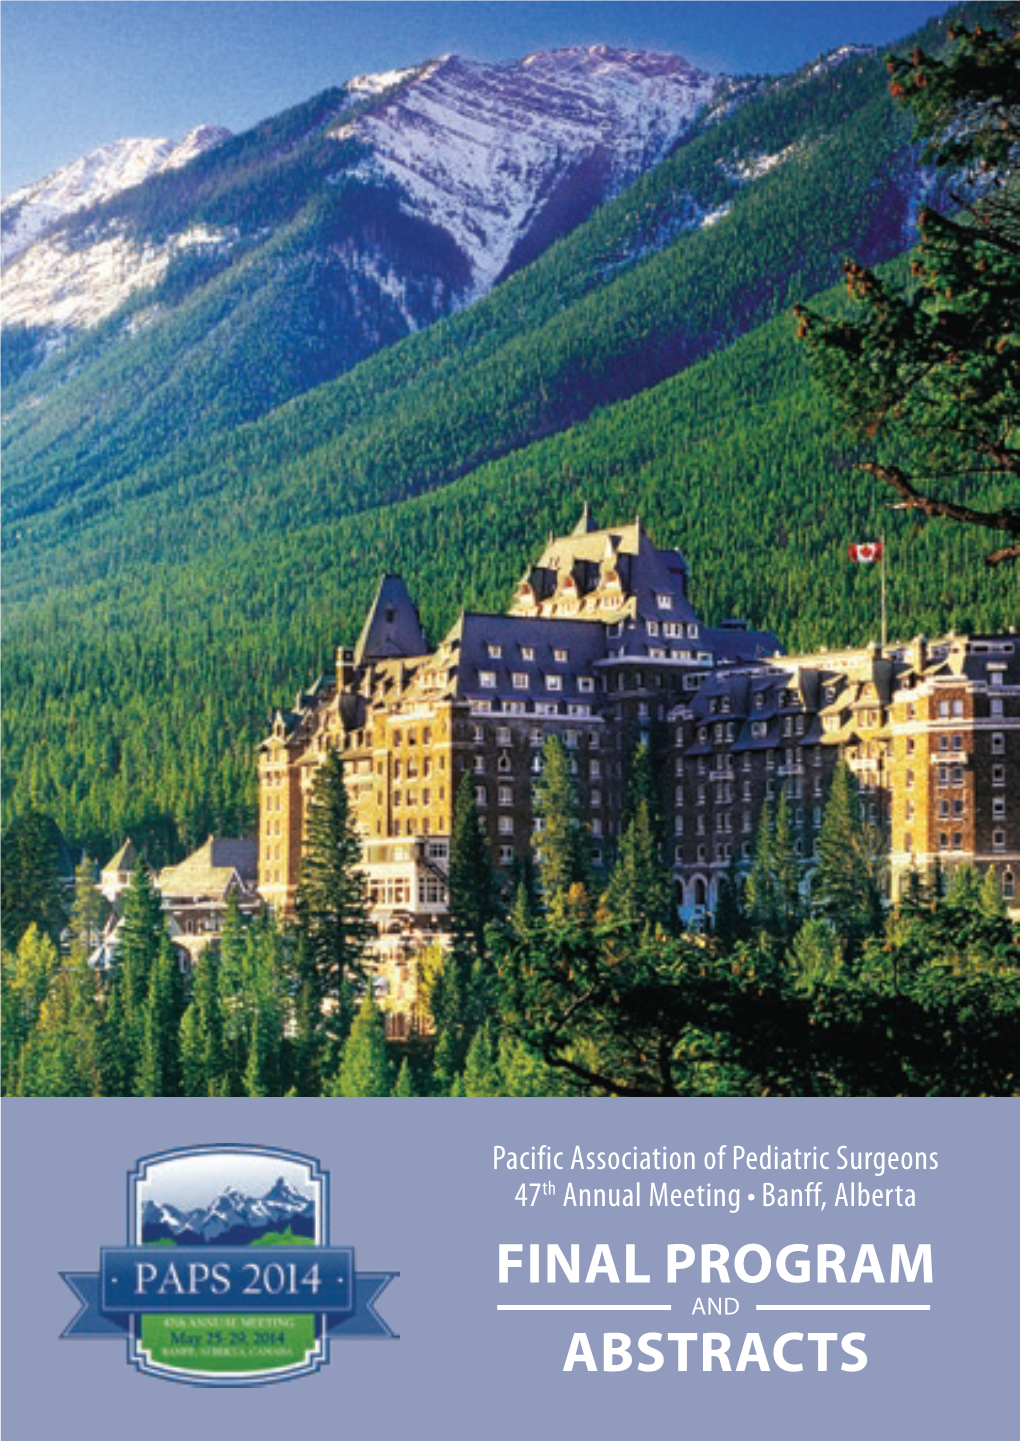 PAPS 2014 Banff Booklet